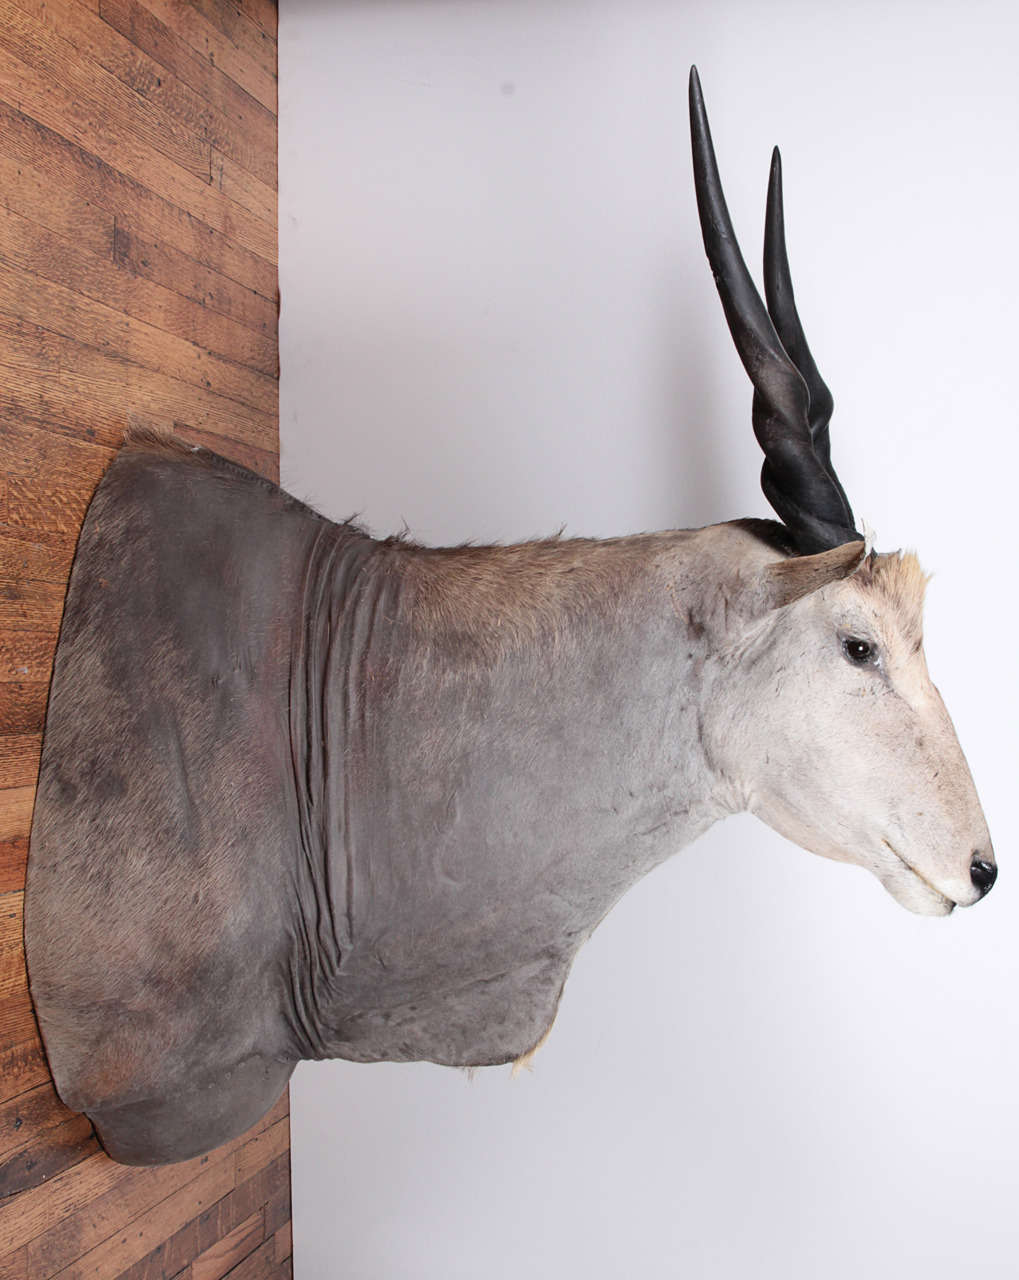 Beeindruckendes Schulterstück einer ostafrikanischen Elenantilope aus den frühen 2000er Jahren. Aufrecht, nach vorne montiert. Tolle Färbung und Taxidermie in ausgezeichnetem Zustand. Bitte beachten Sie, dass sich dieser Artikel an einem unserer